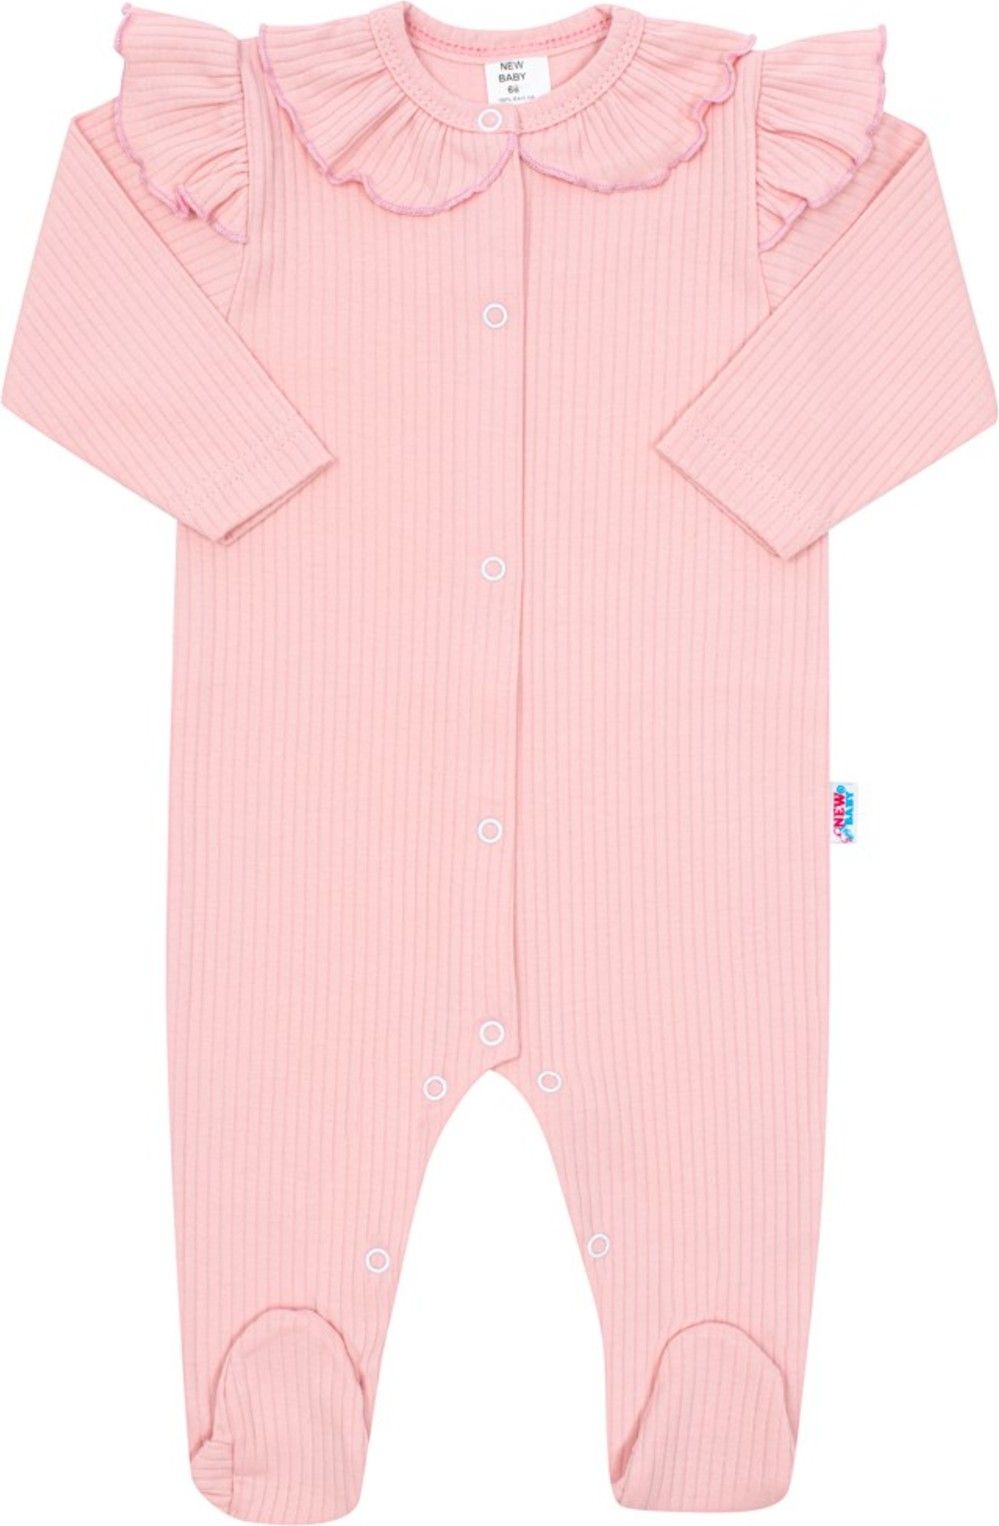 Kojenecký bavlněný overal New Baby Stripes růžový - obrázek 1